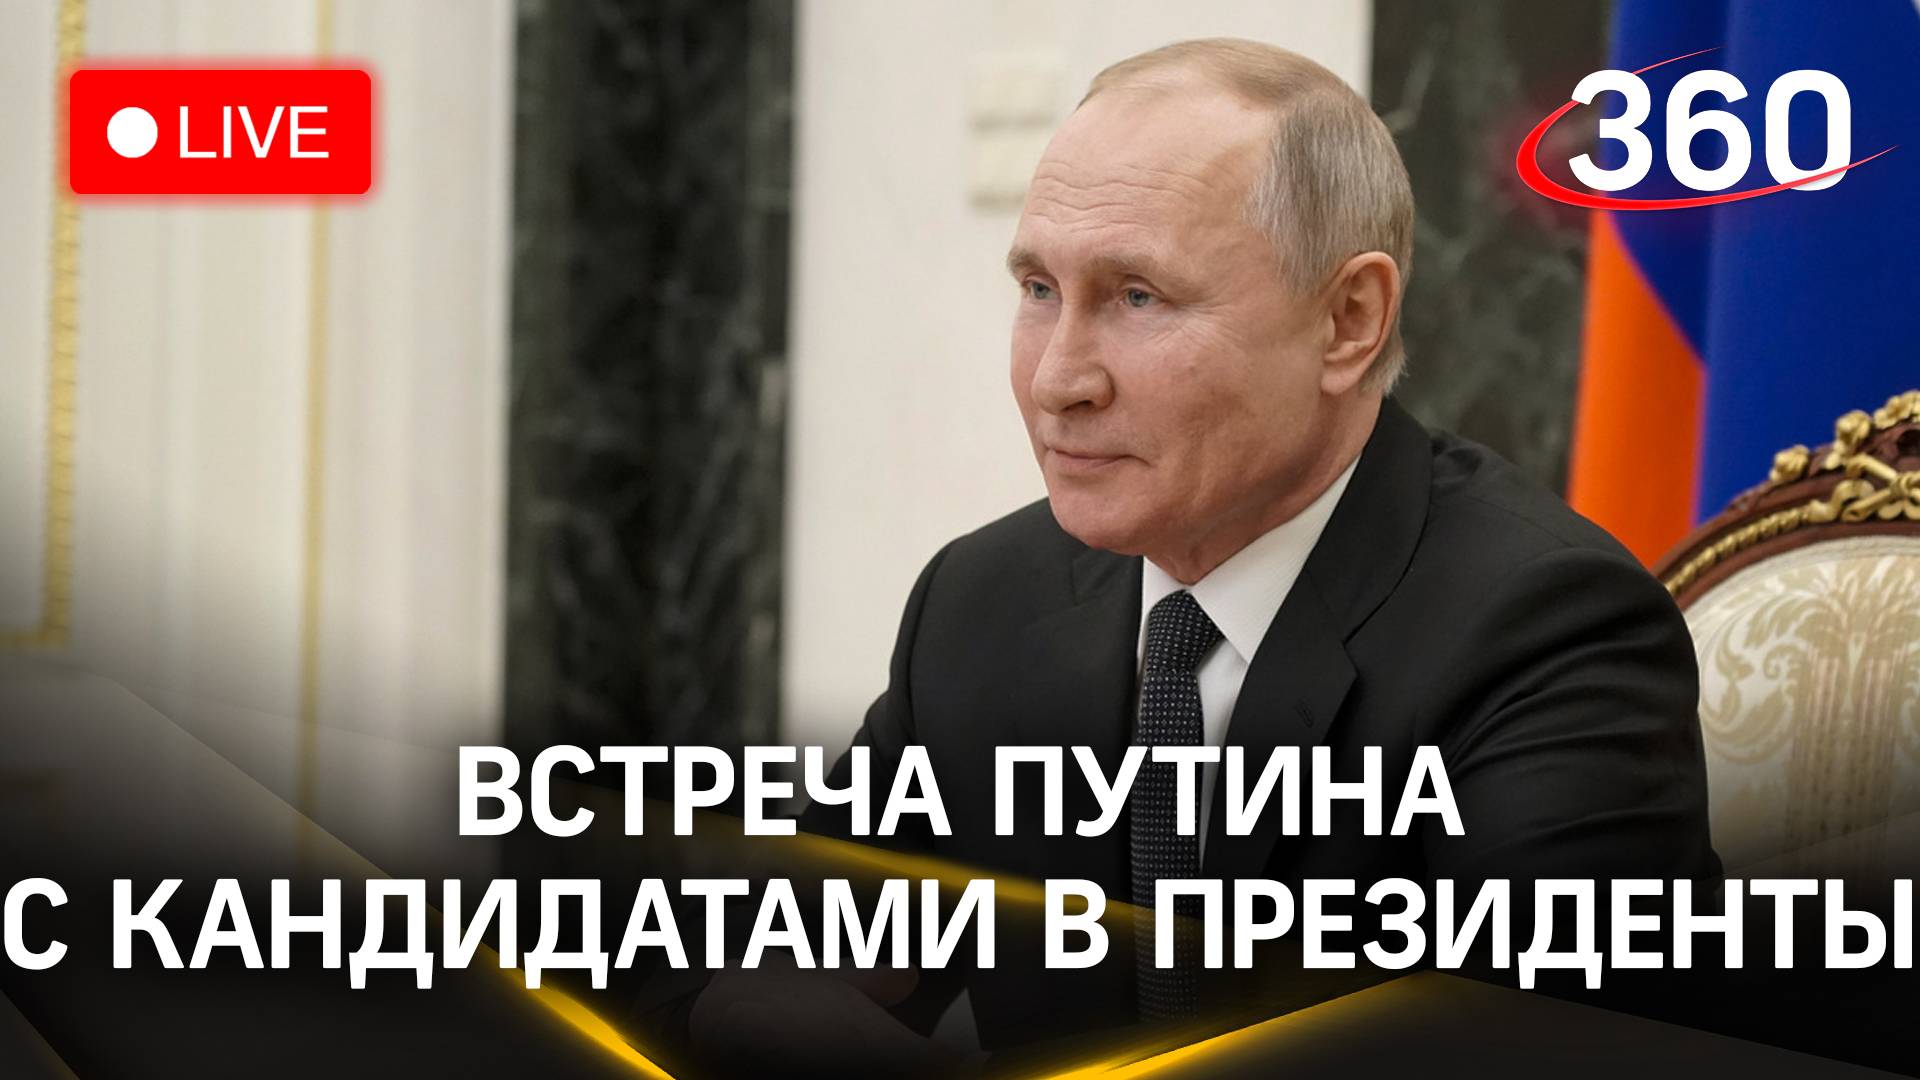 Путин на встрече с кандидатами после победы на выборах | Трансляция